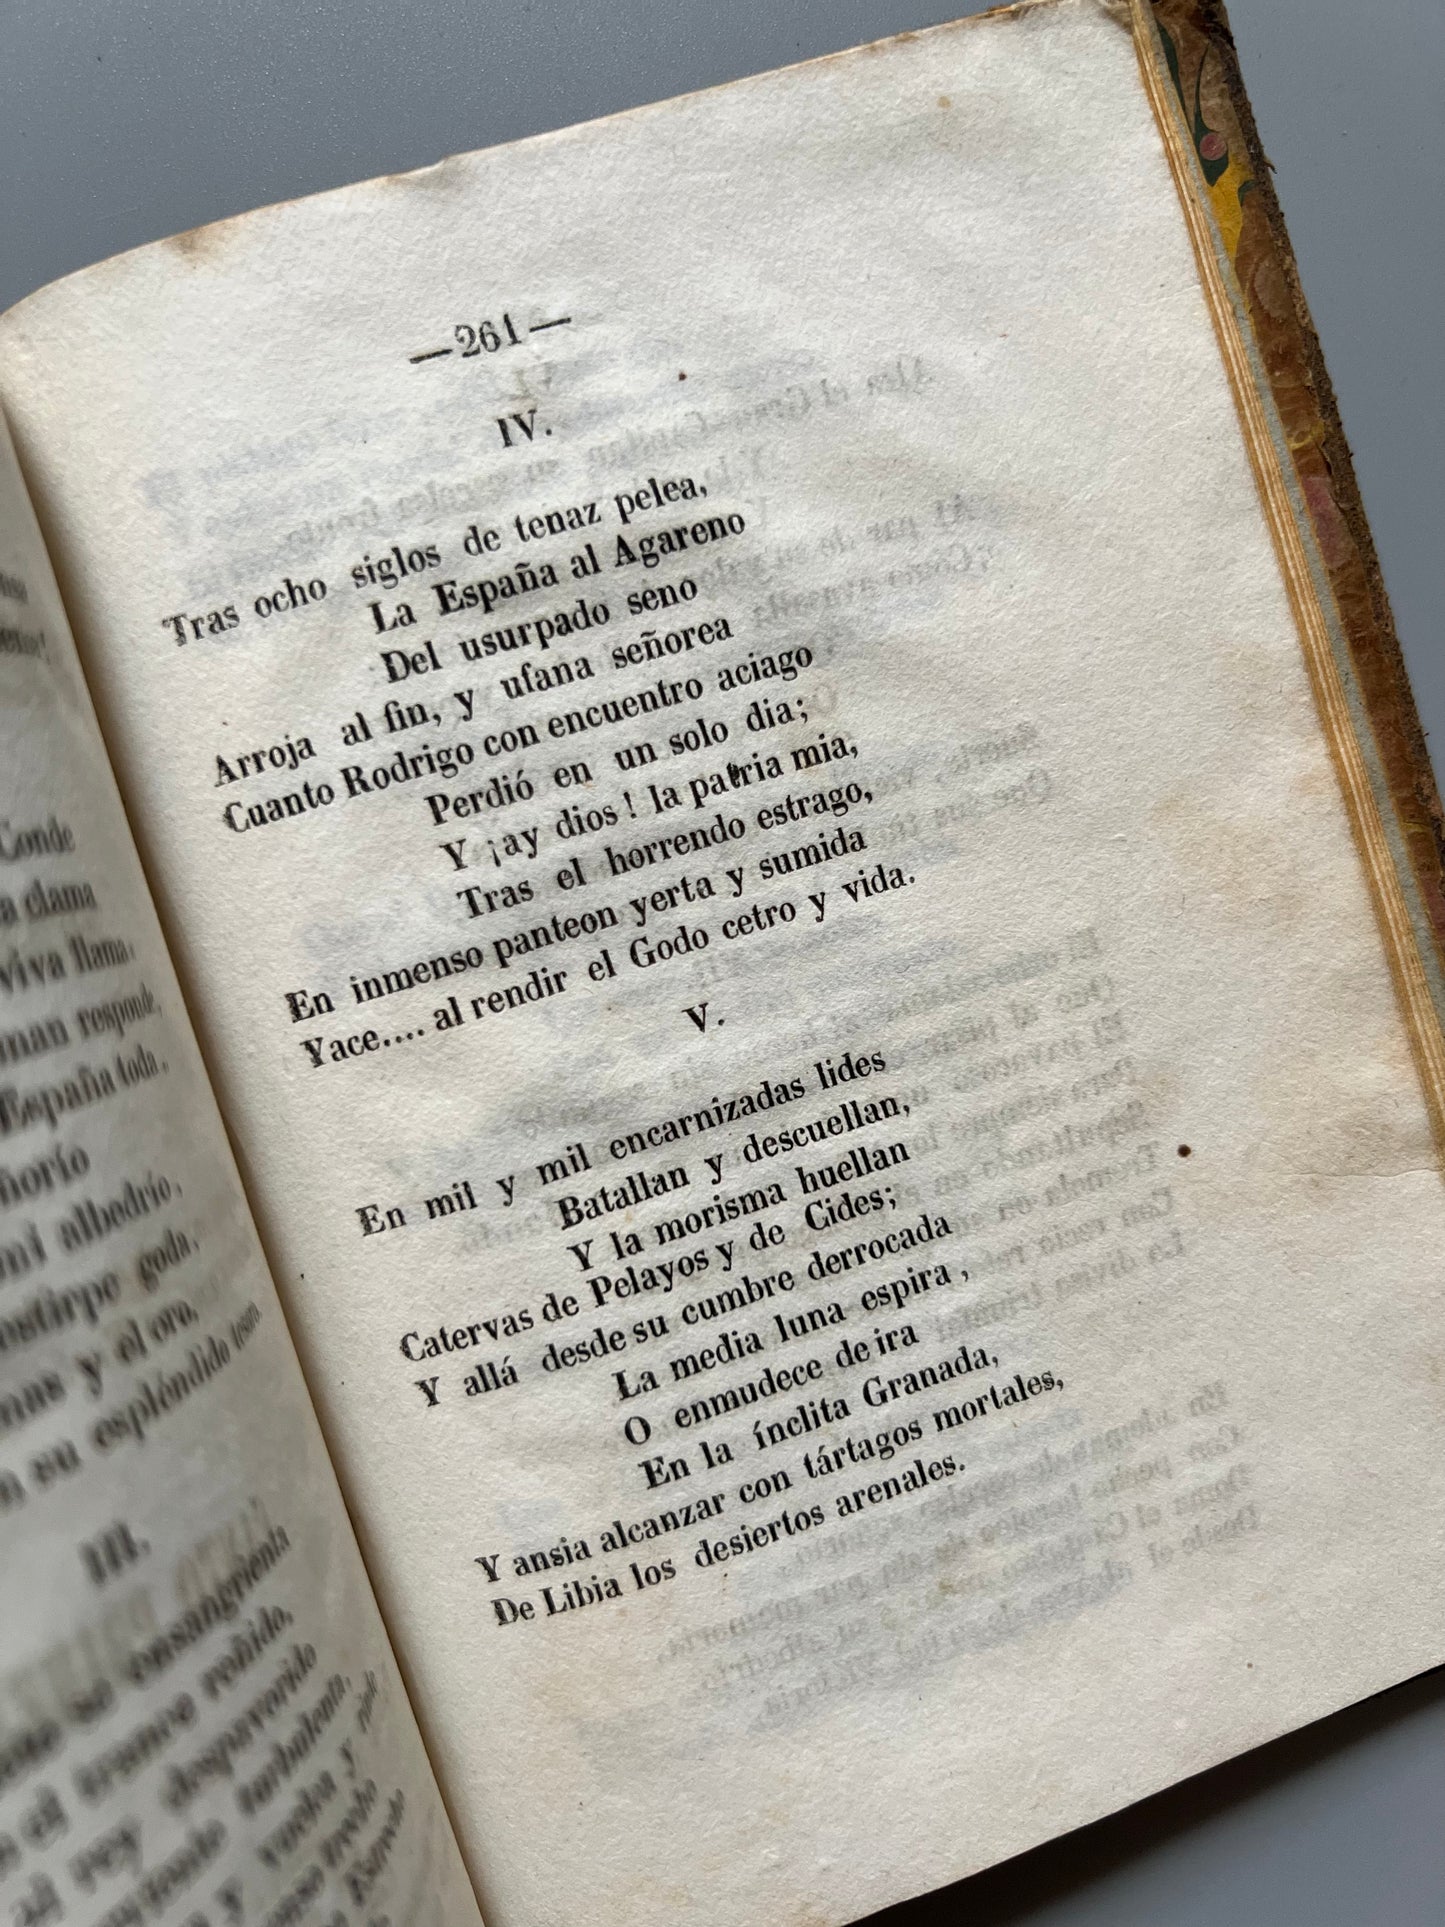 La libertad de los mares o El gobierno inglés desembozado, con un poema intitulado Jibraltar - Imprenta de F. Sánchez, 1842